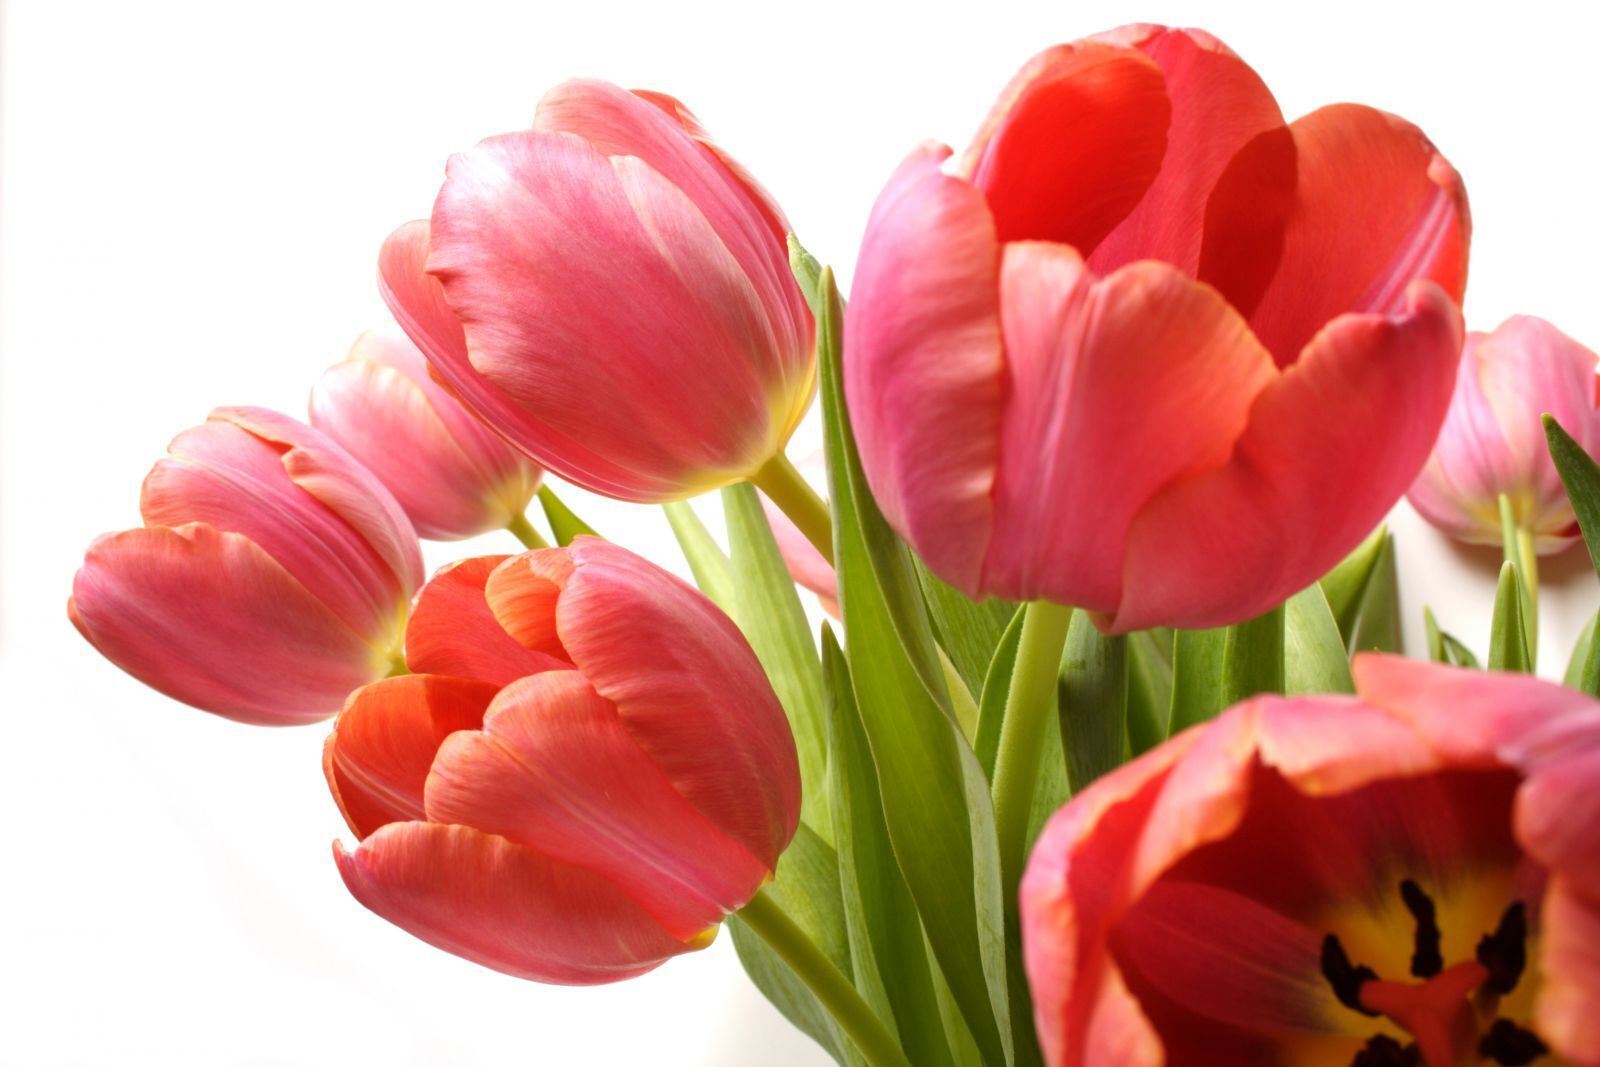 hinh nen hoa tulip 024